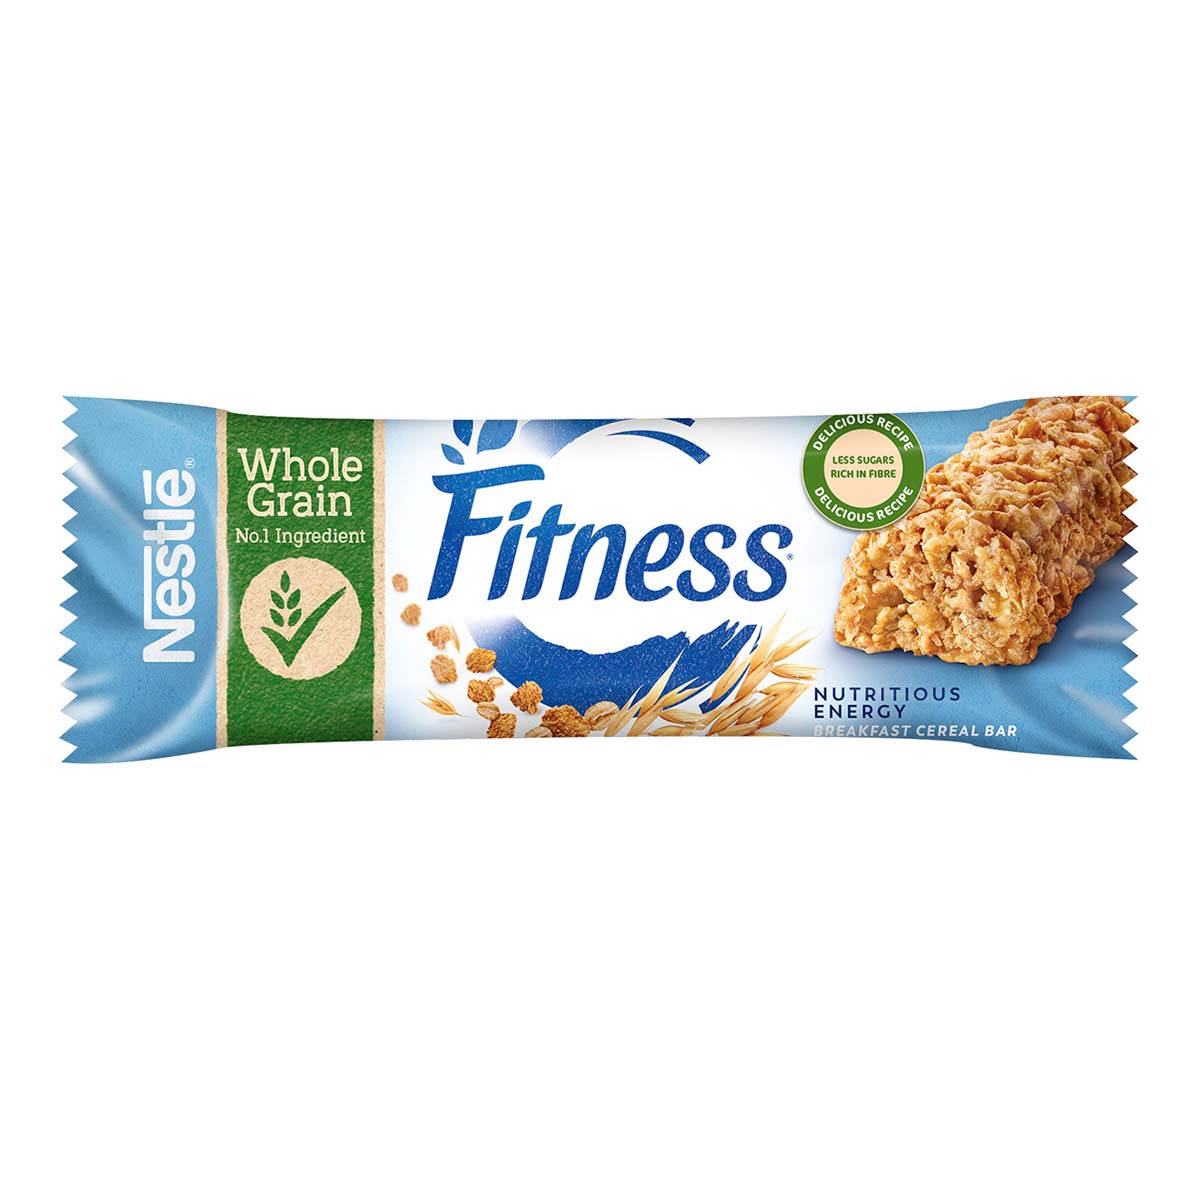 Fitness ORIGINAL Barrette di cereali con frumento integrale, con vitamine, calcio e ferro